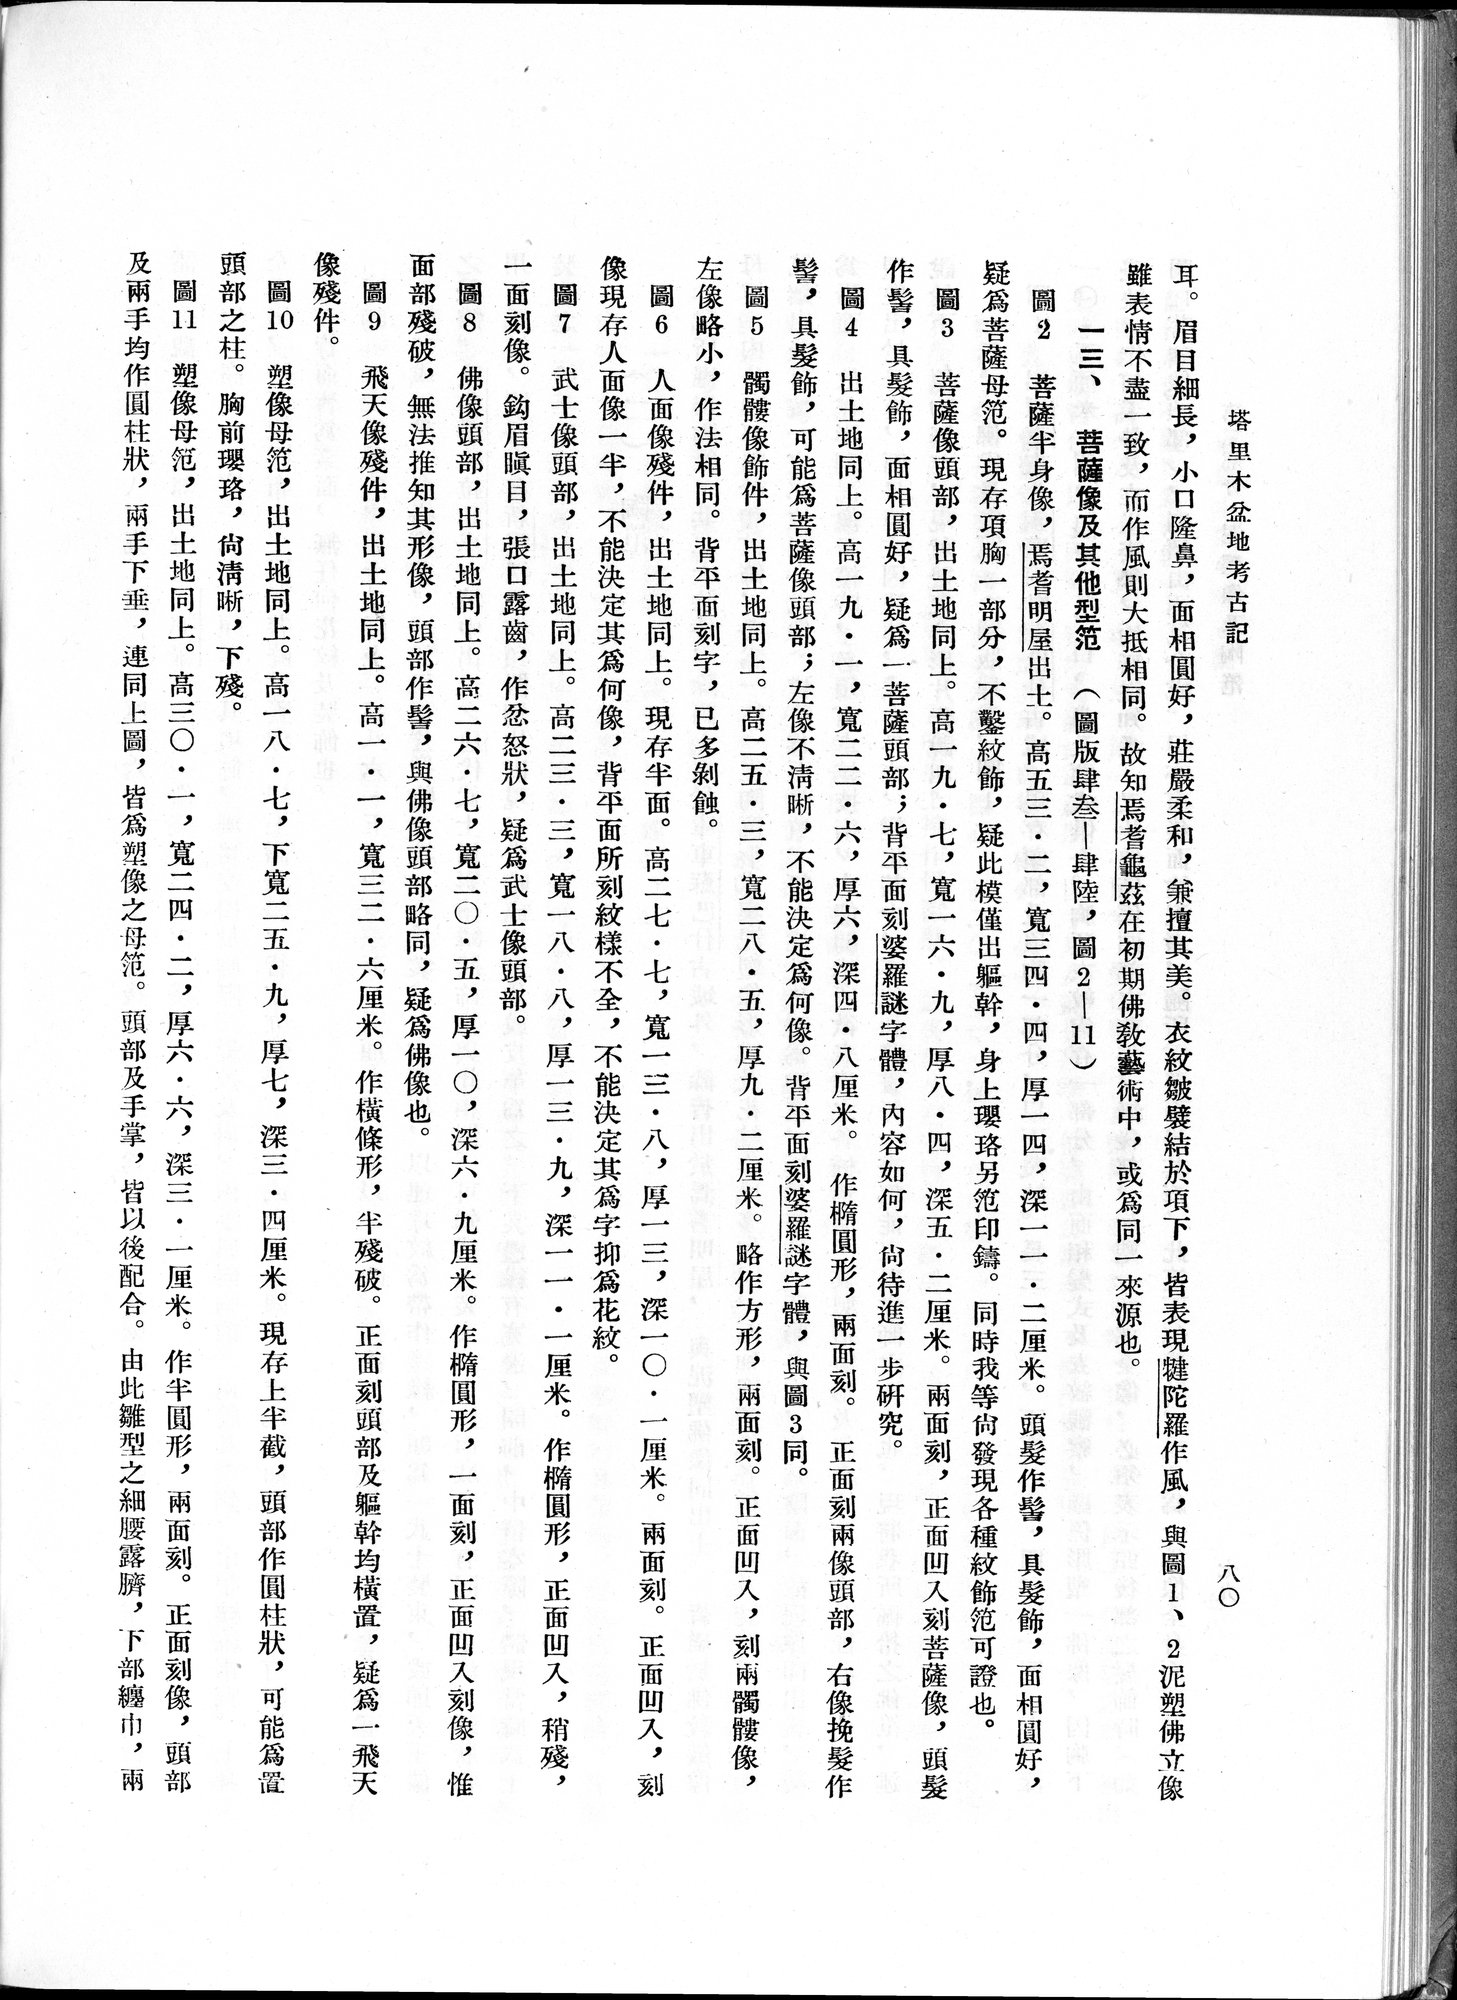 塔里木盆地考古記 : vol.1 / Page 144 (Grayscale High Resolution Image)